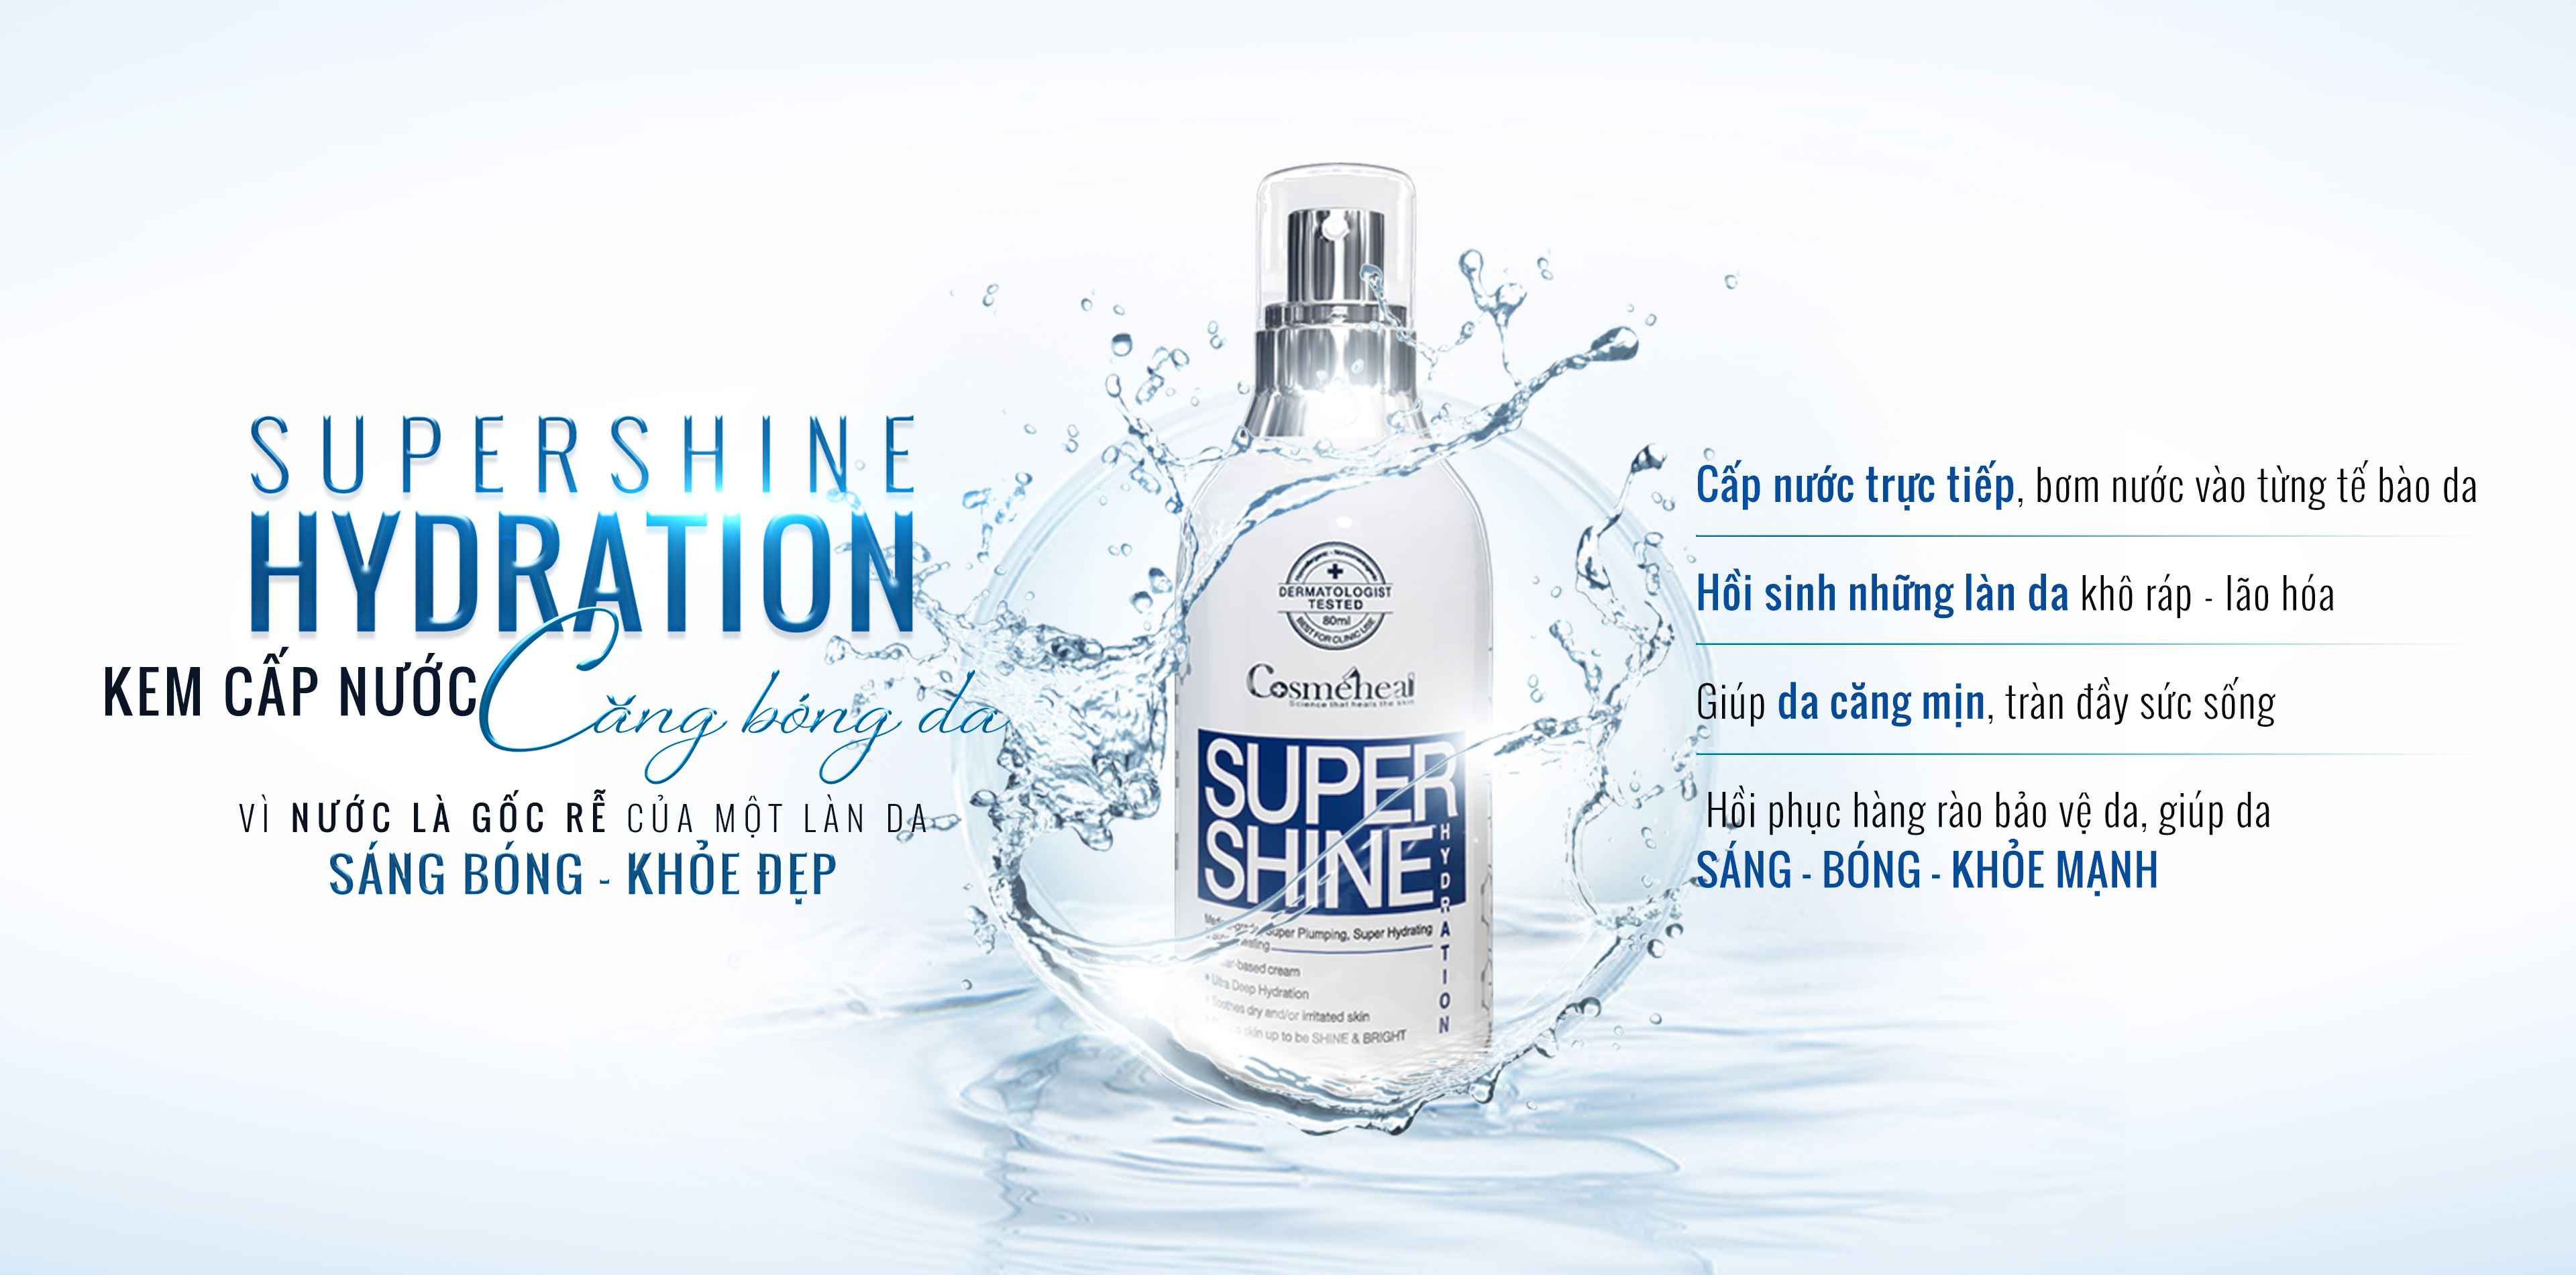 Kem_CapAm_Hydration_SuperShine